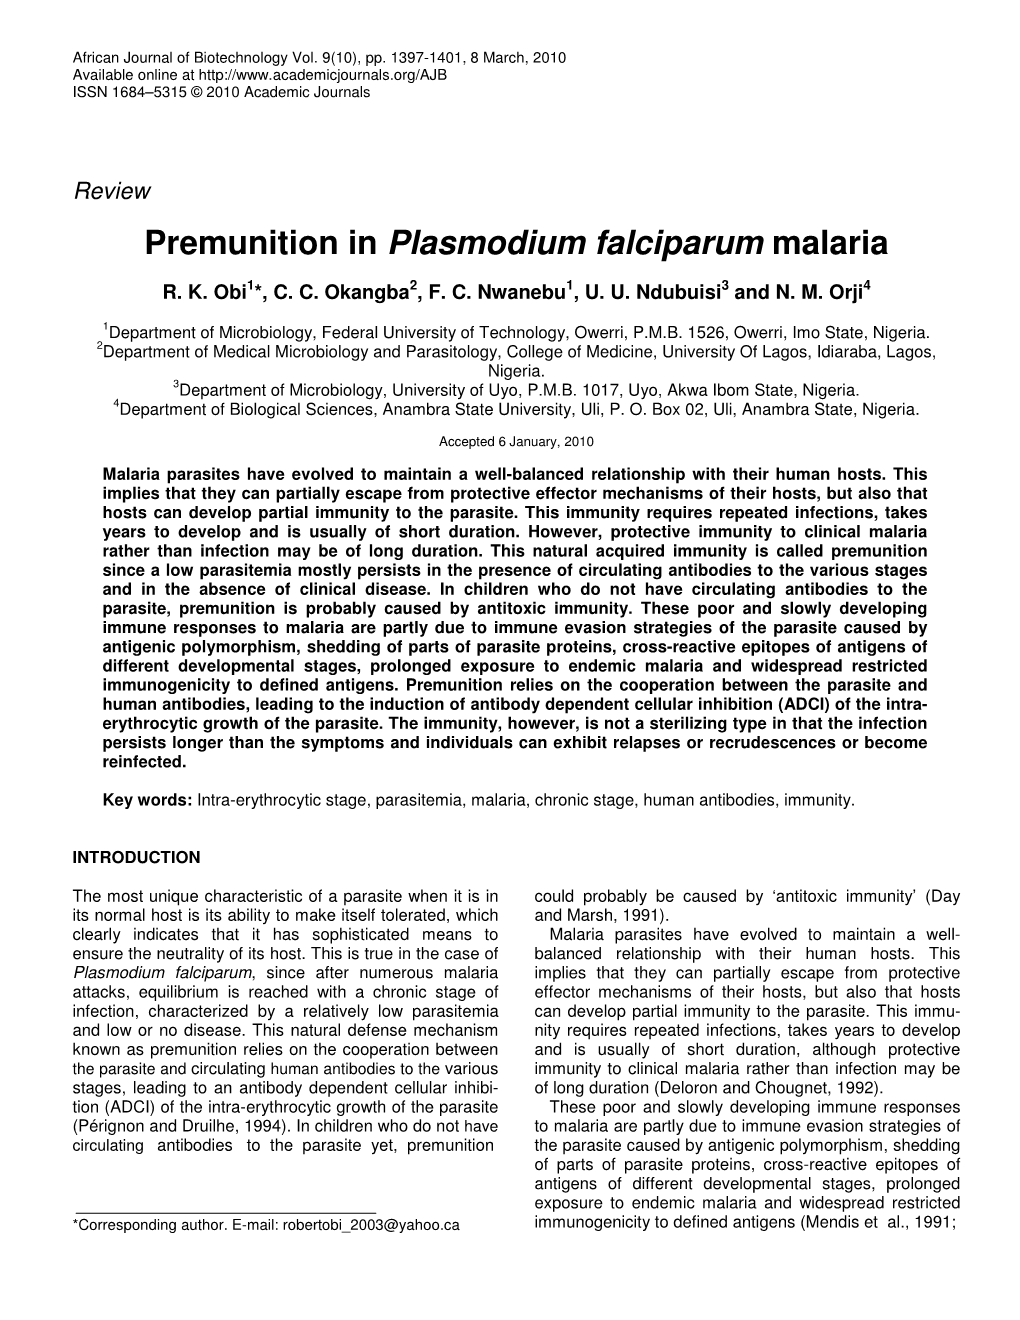 Premunition in Plasmodium Falciparum Malaria